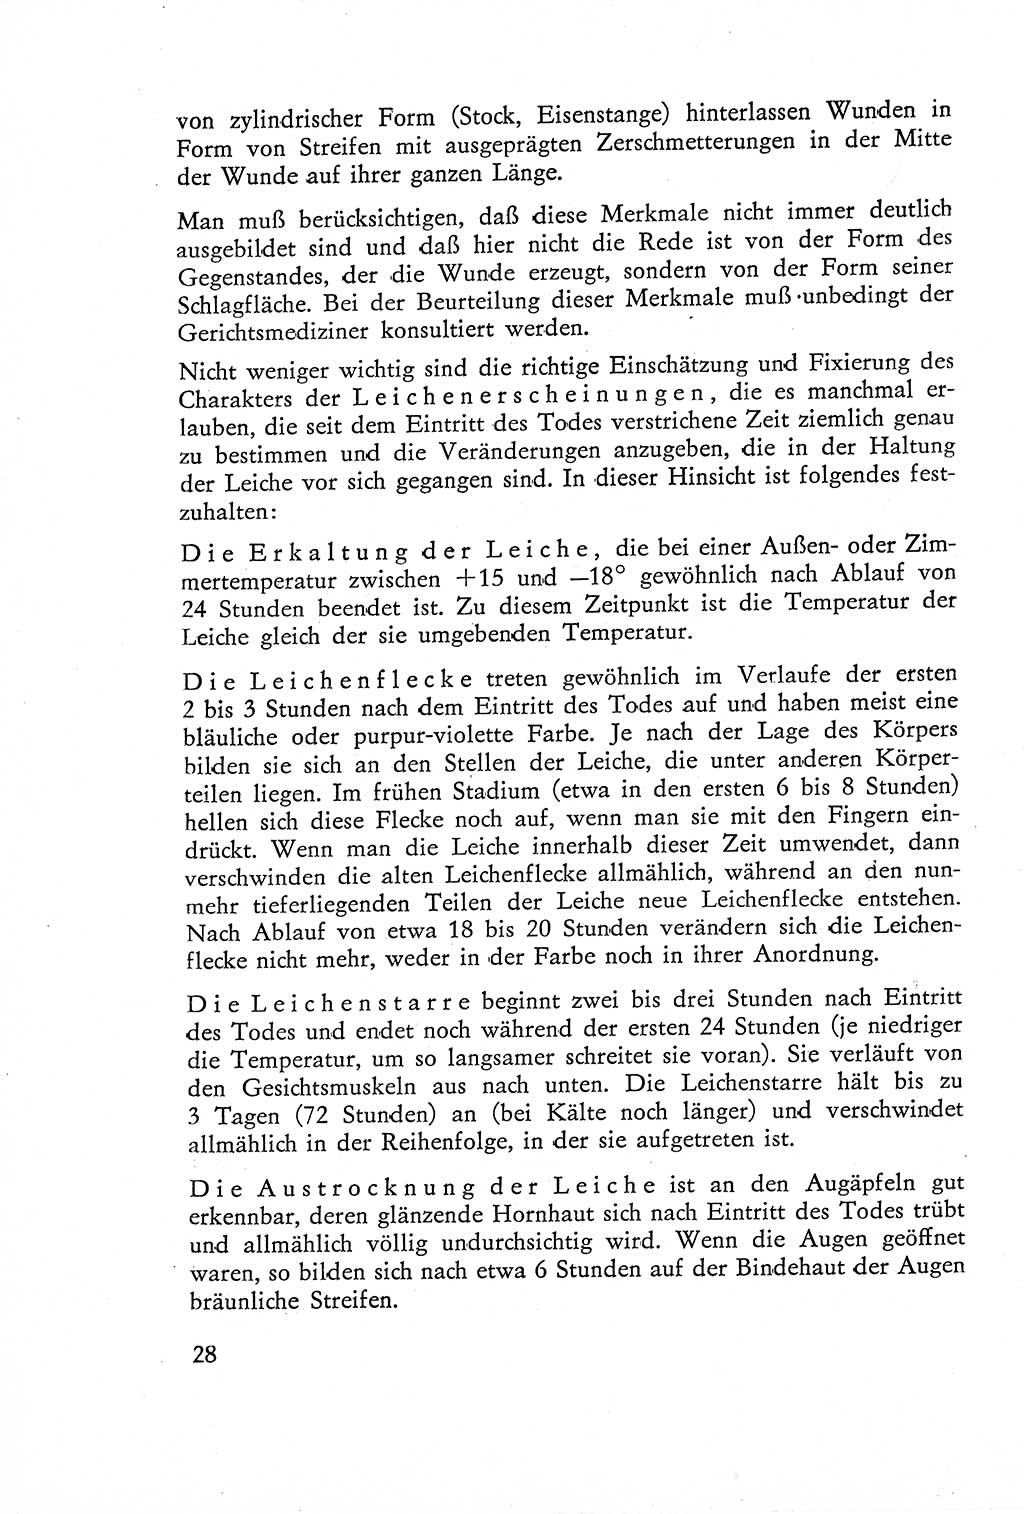 Die Untersuchung einzelner Verbrechensarten [Deutsche Demokratische Republik (DDR)] 1960, Seite 28 (Unters. Verbr.-Art. DDR 1960, S. 28)